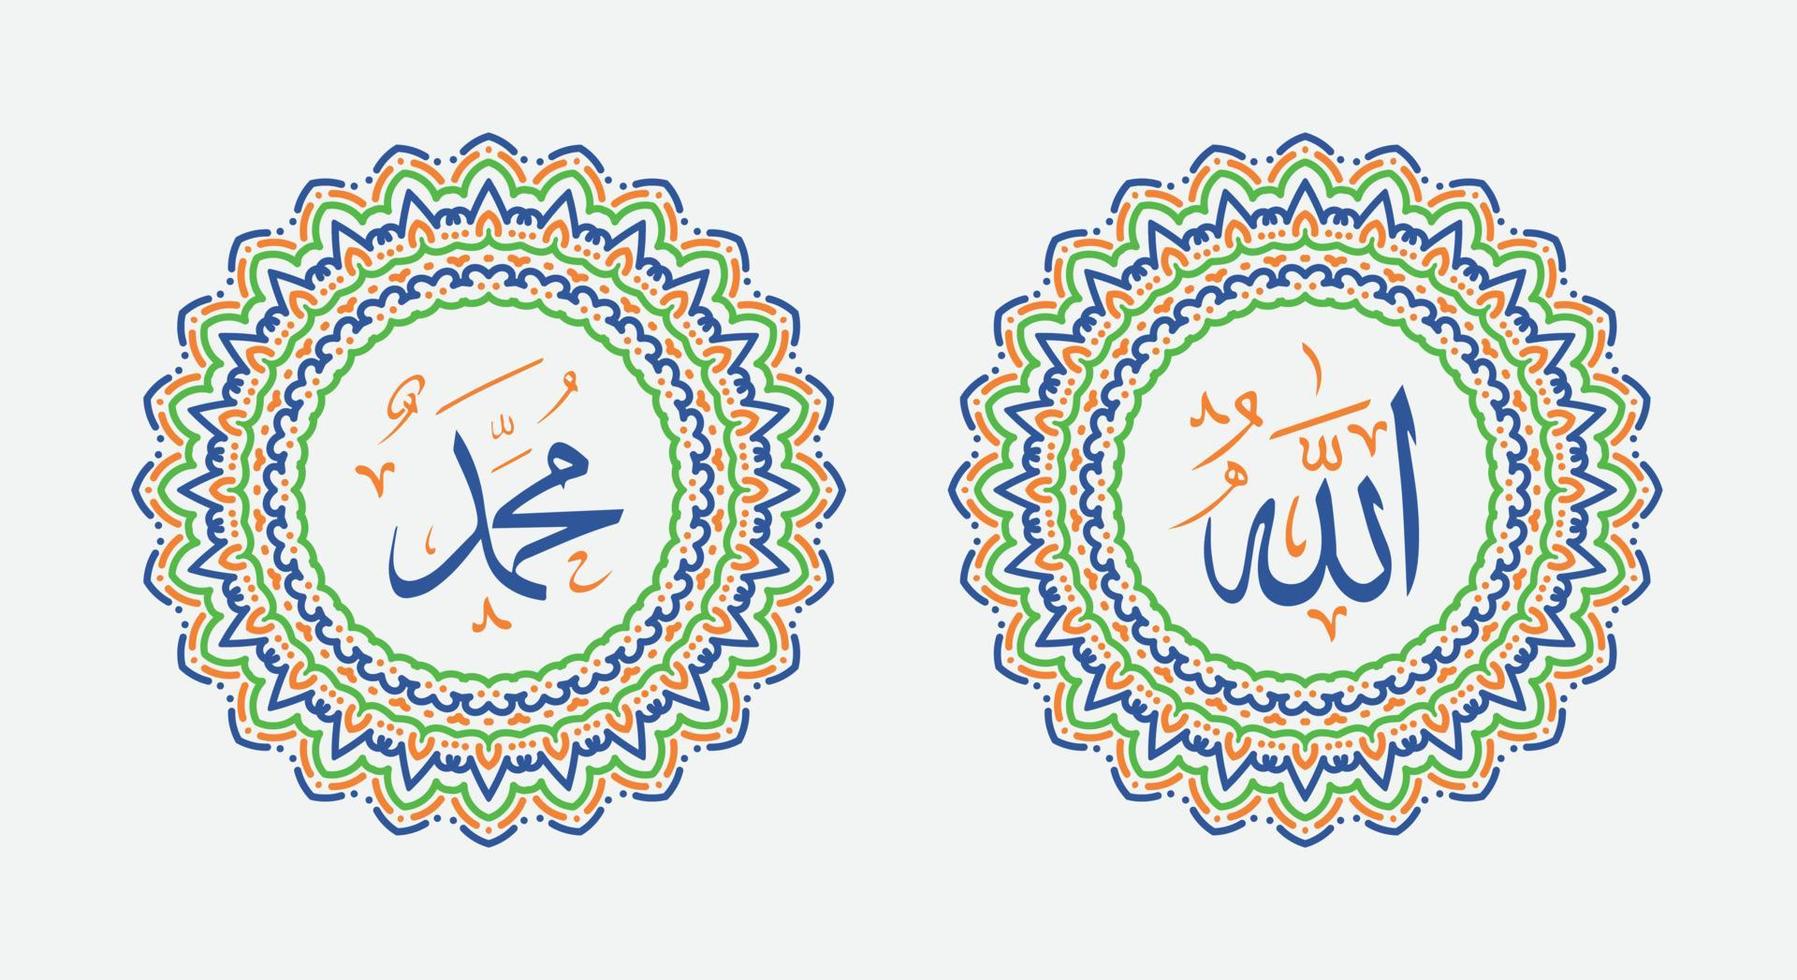 Allah Muhammad Name von Allah Mohammed, Allah Muhammad Arabisch islamisch Kalligraphie Kunst, mit traditionell Rahmen und bunt Farbe vektor